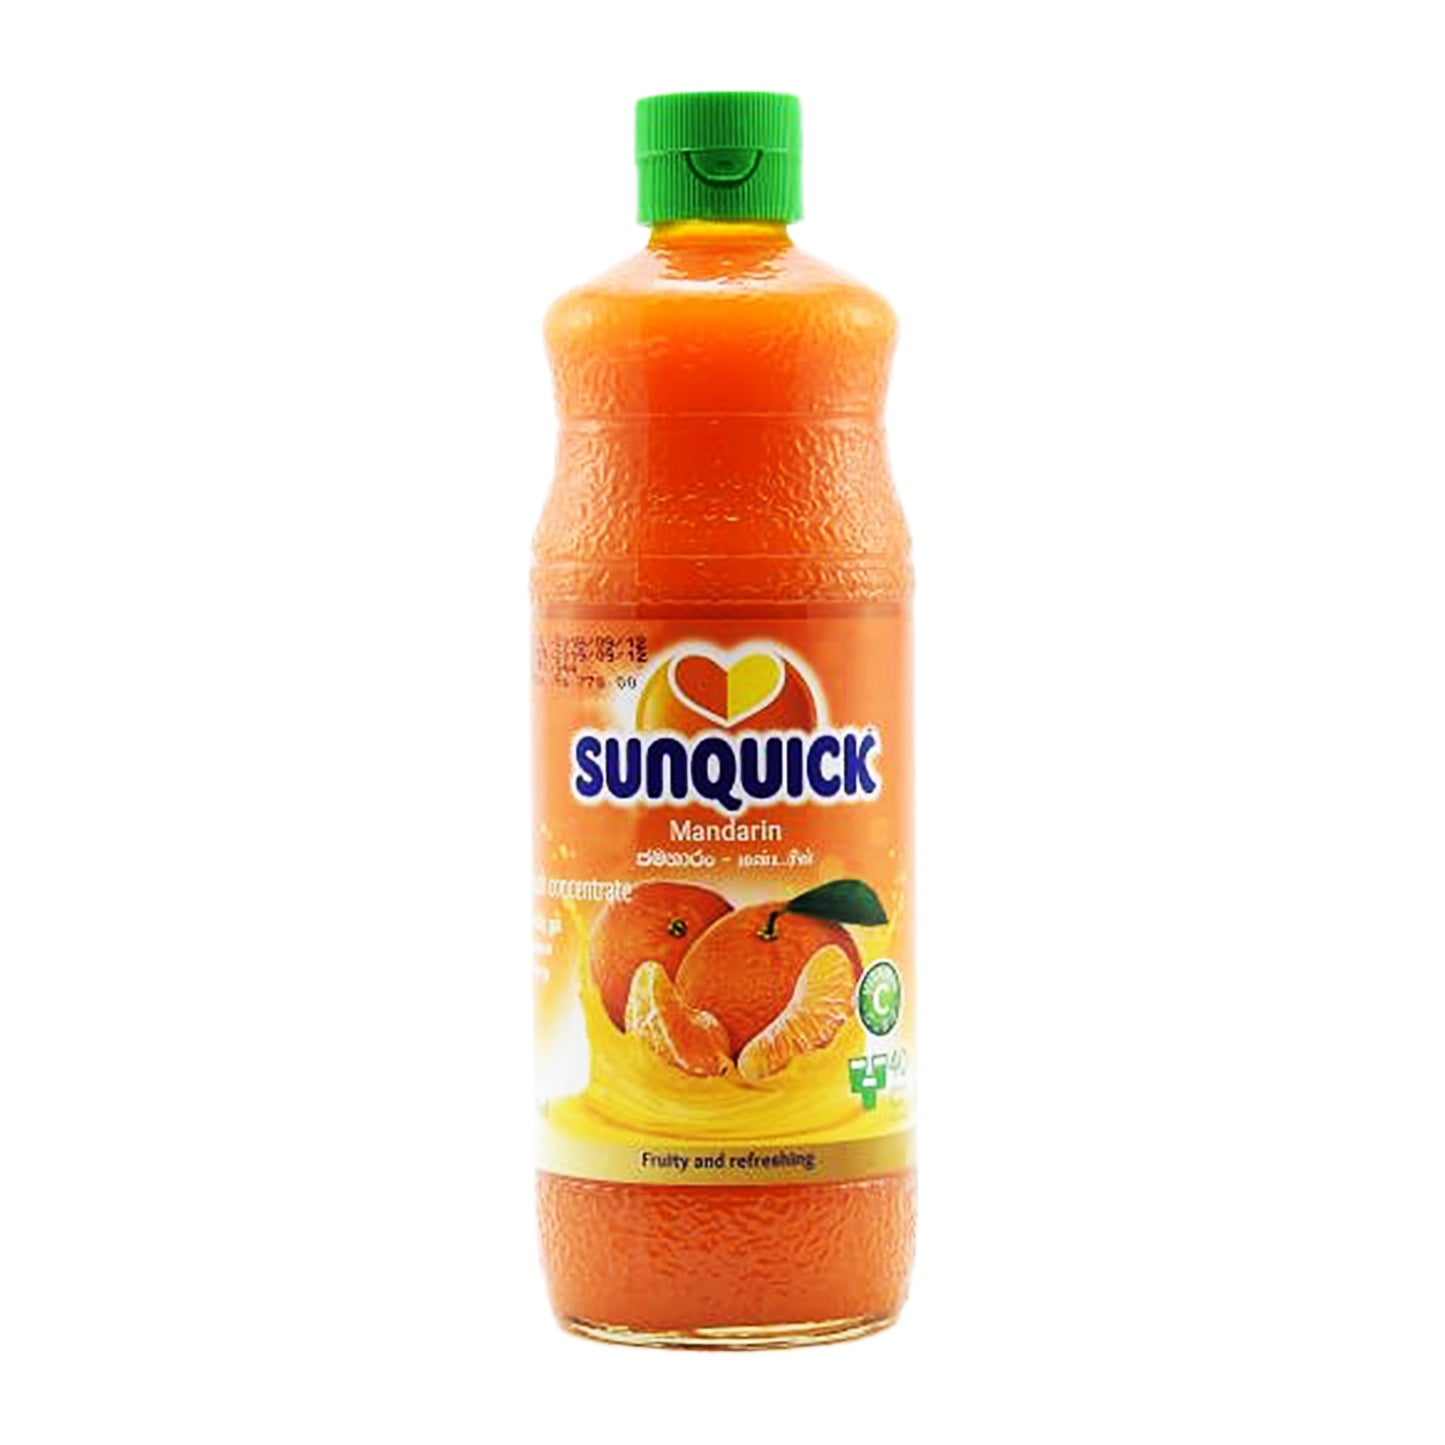 Sunquick Mandarijn (840 ml)